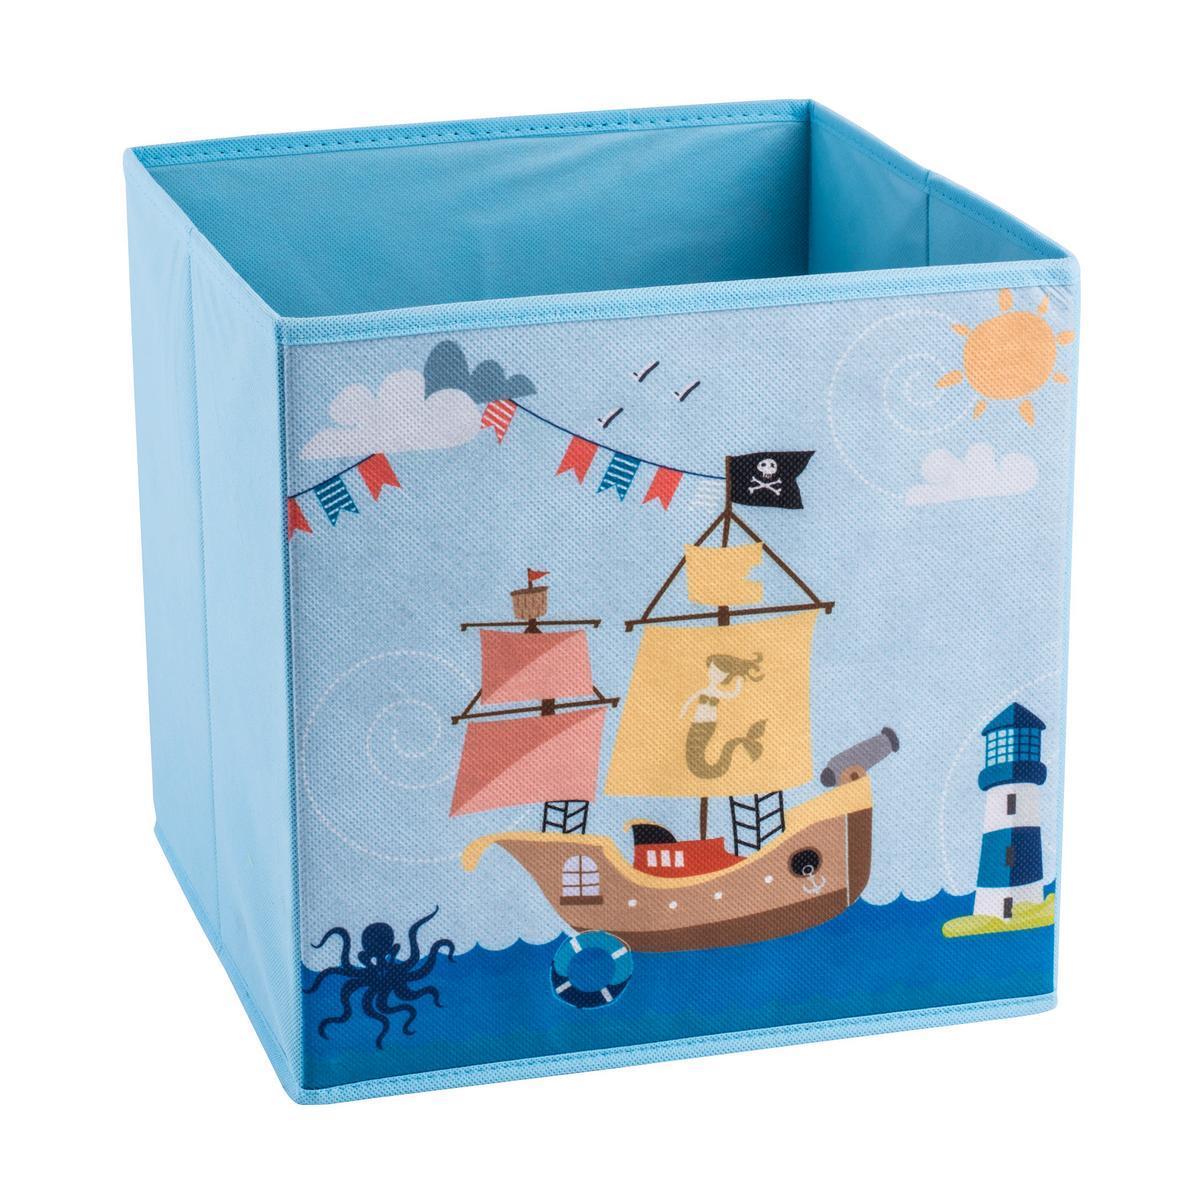 Cube Pirate - Tissu non tissé - 28 x 28 x H 28 cm - Multicolore